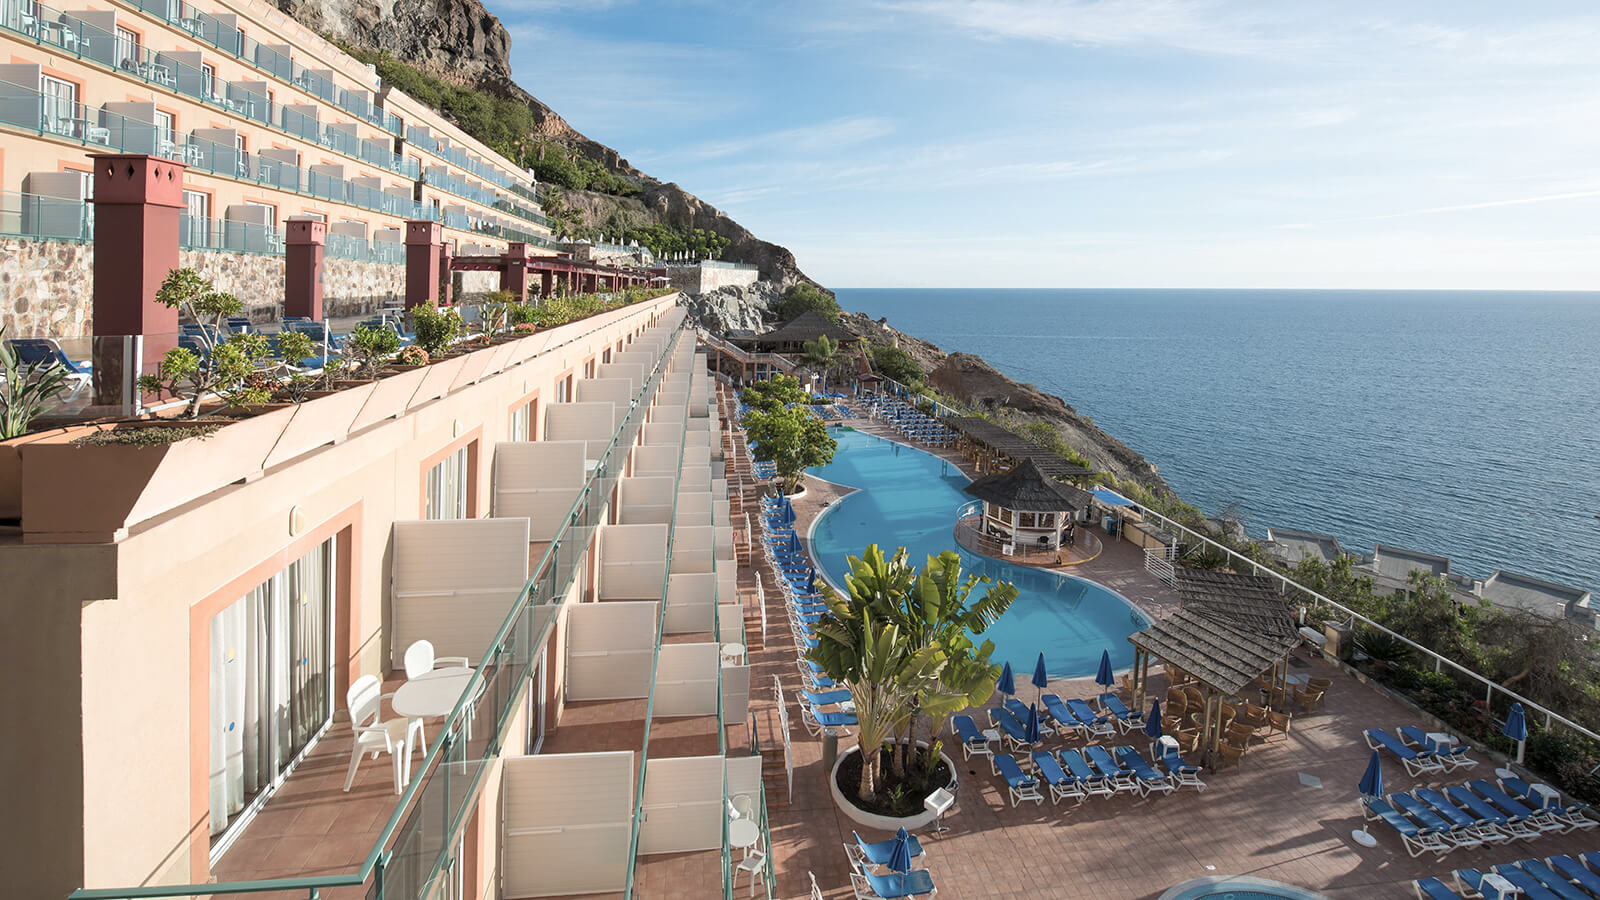 Gran Canaria: 8 días y 7 noches en Hotel 4* con Todo Incluido y Salidas desde 12 ciudades. Incluye Vuelos, Traslados y Seguro de Viaje.